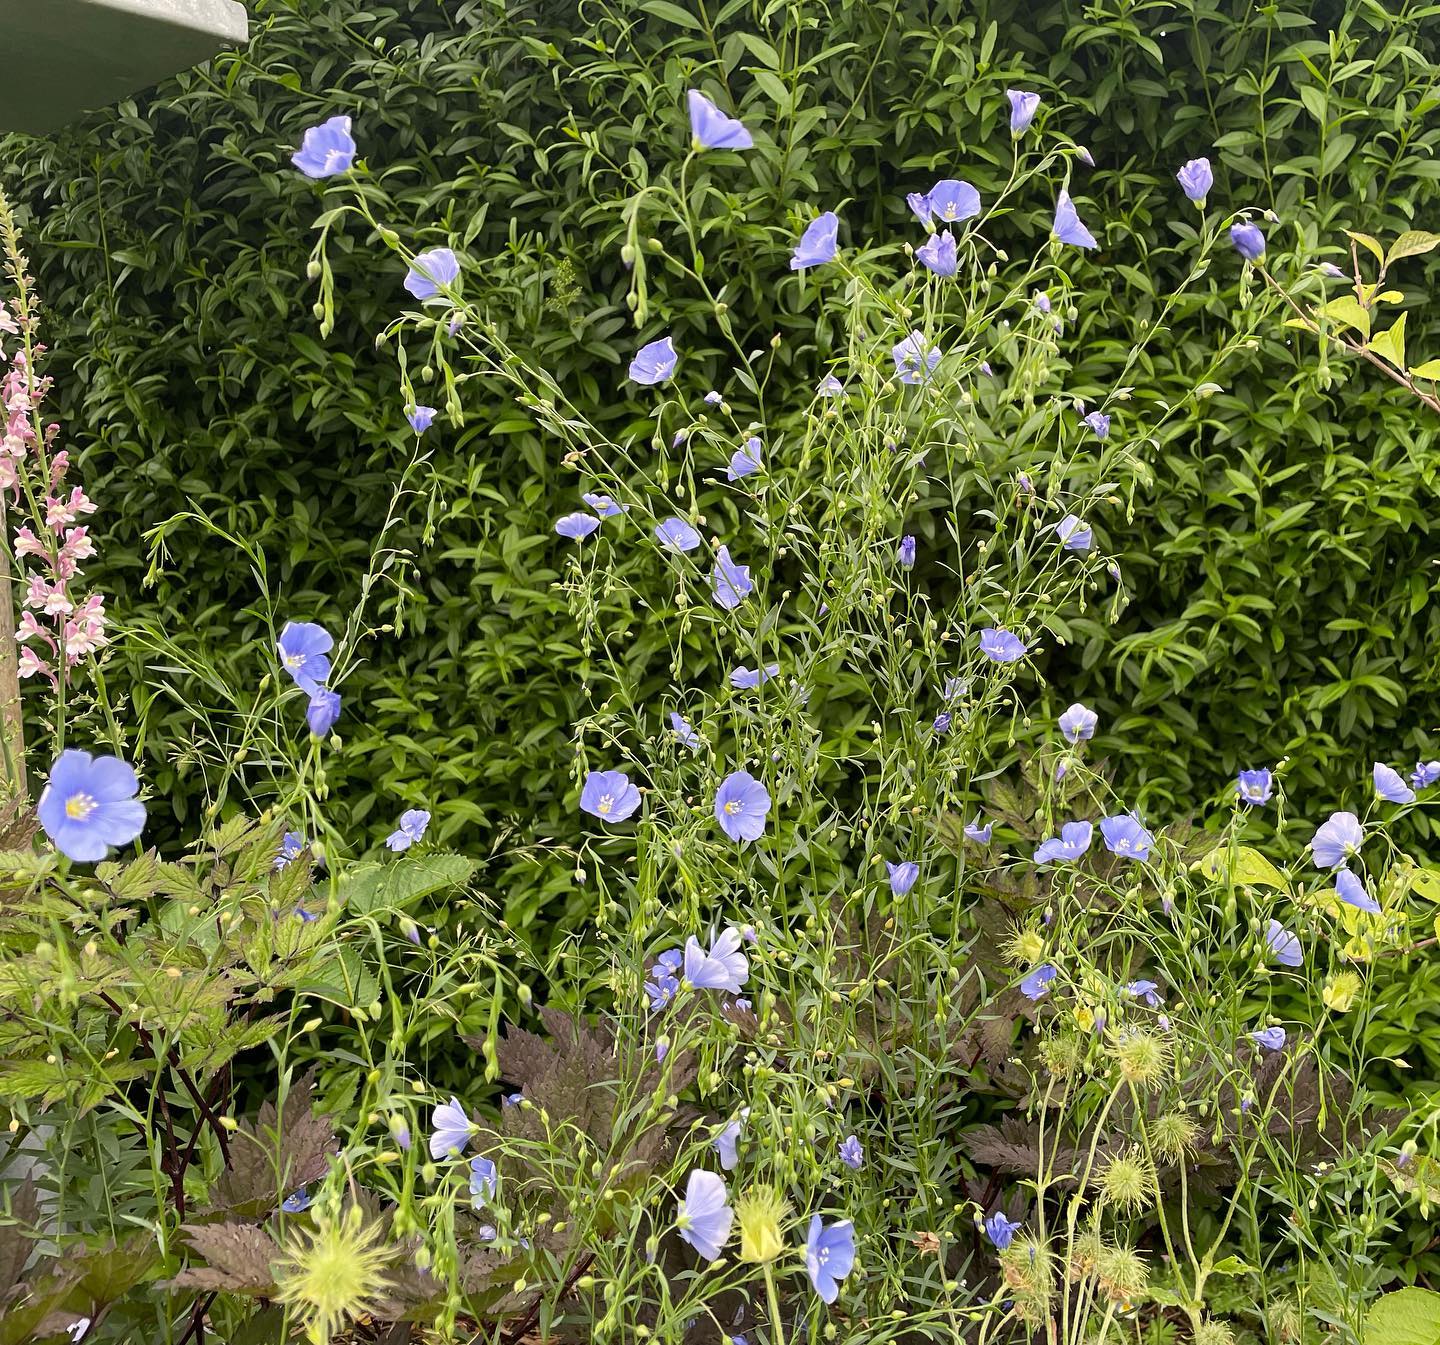 HØR • flerårig er så fin med sine klare blå blomster. For to år siden fik jeg en enkelt lille spinkel plante og nu har jeg glæde af denne flok. 
•
#countrylivshave #fraenbarmark #blomster #blomsterihaven #hør #hørblomster #liniumusitatissimum #linium